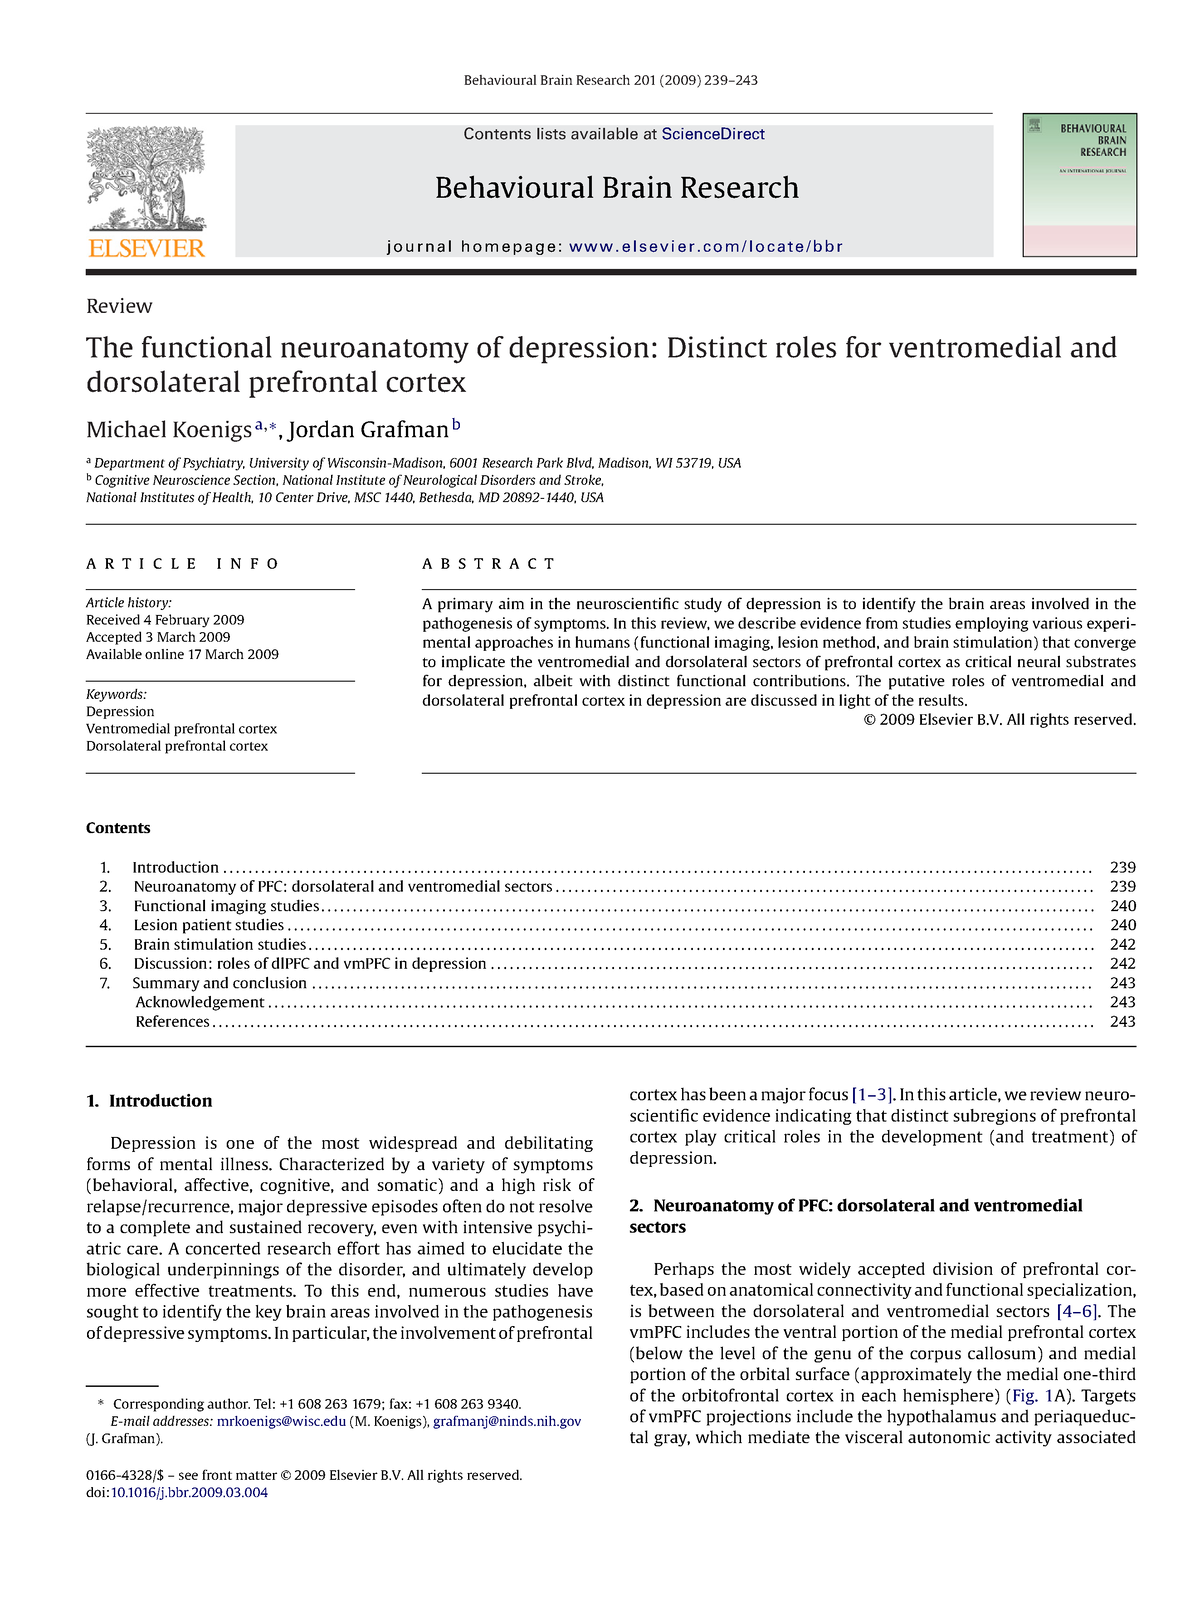 behavioural neurology research paper